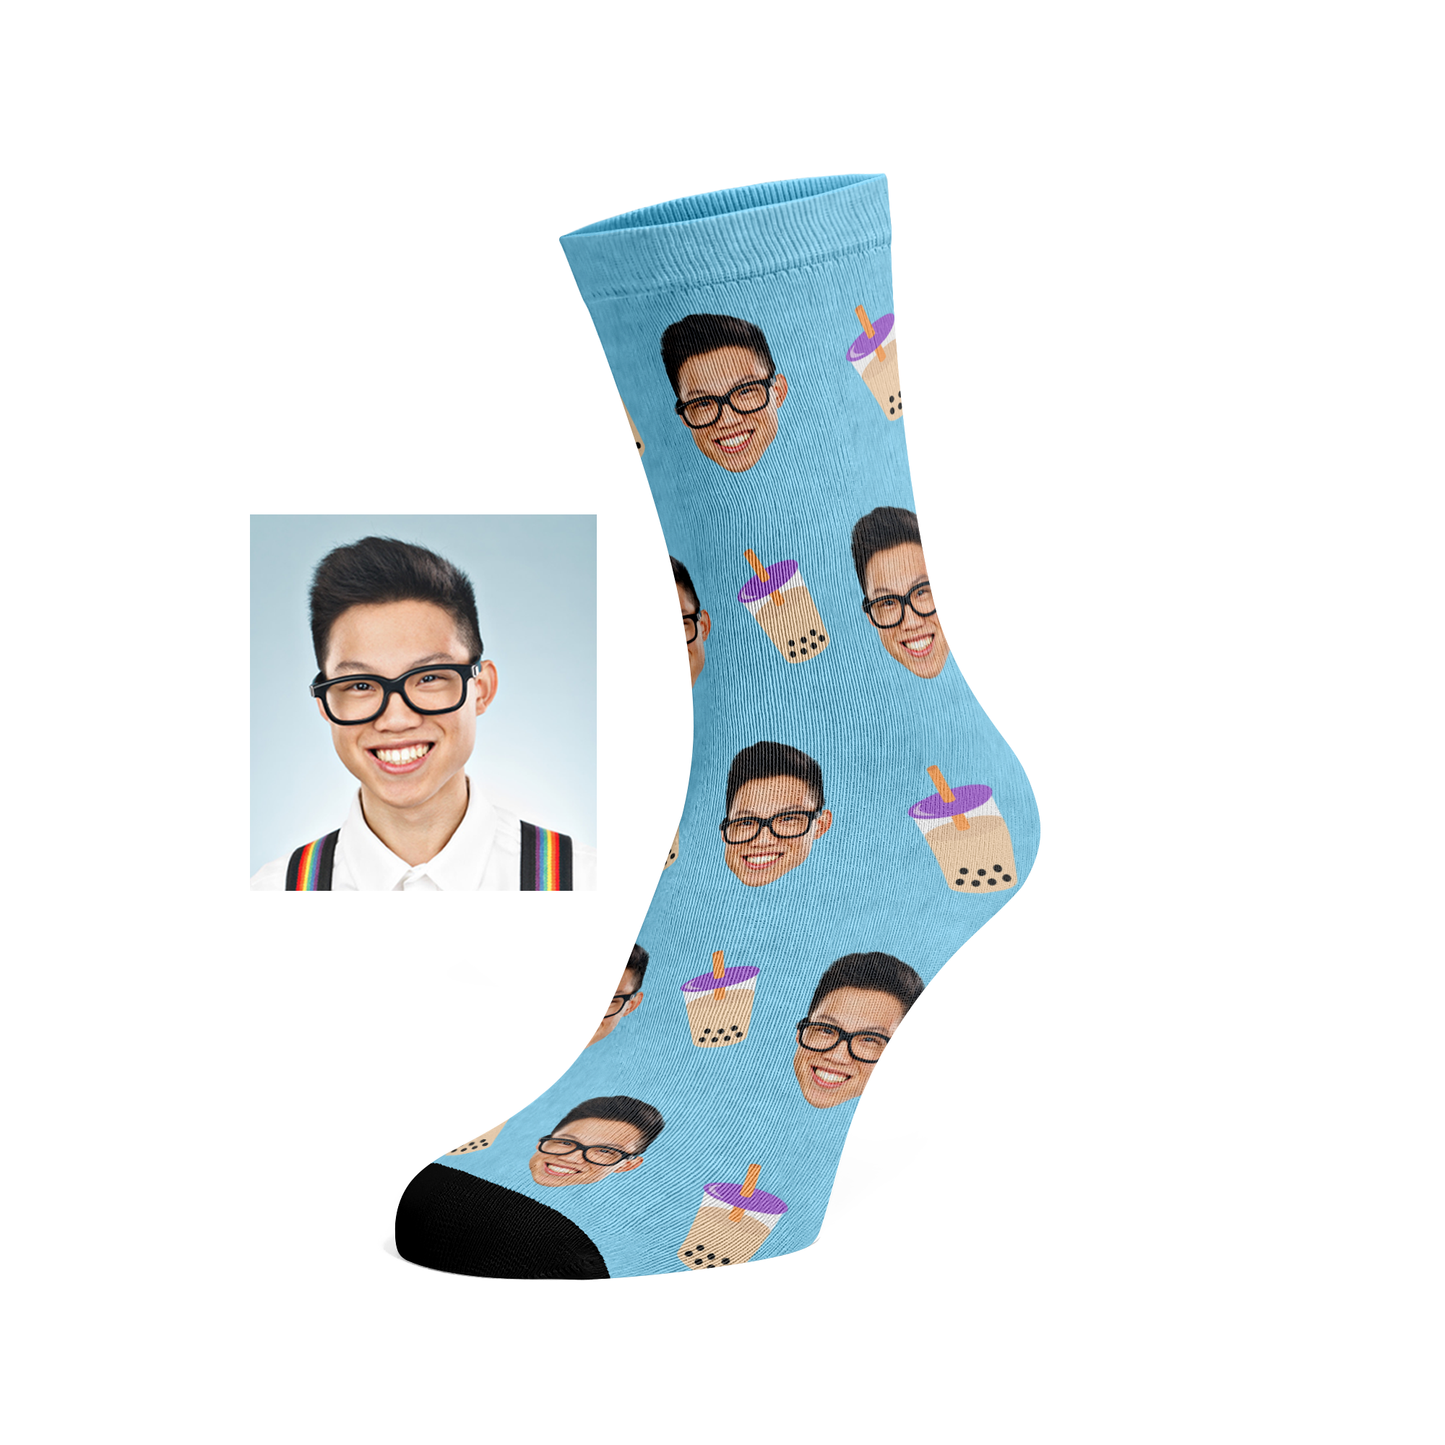 Custom Bubbletea socks